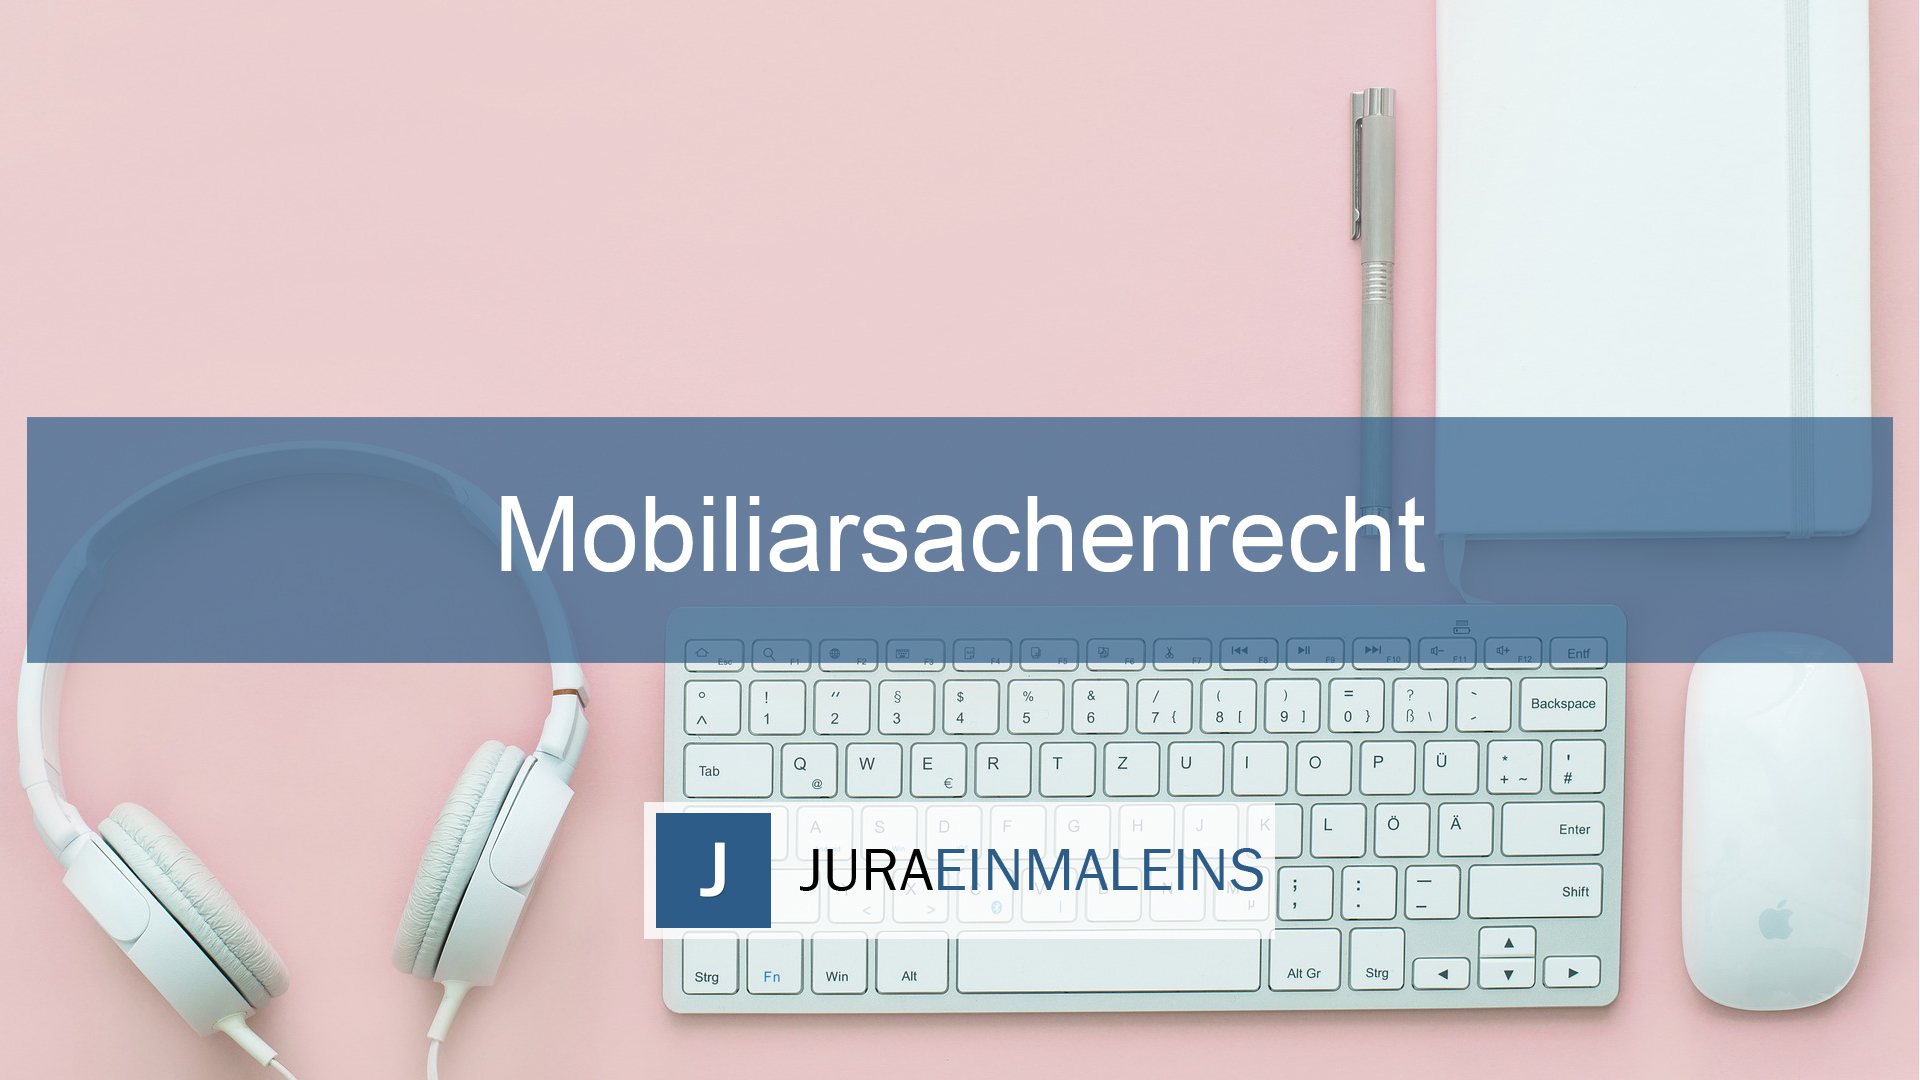 Mobilliarsachenrecht - Jura - Juraeinmaleins